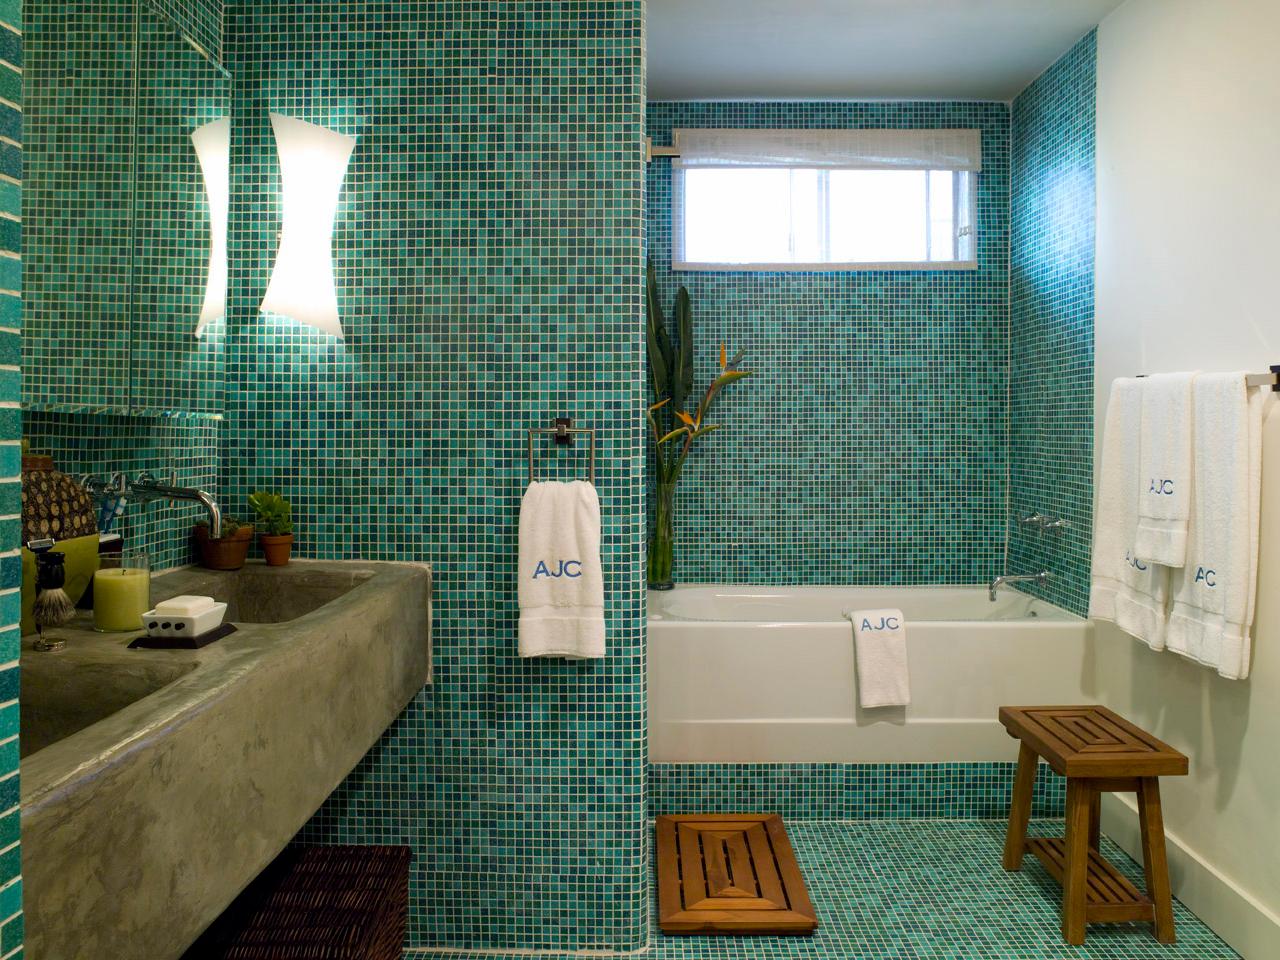 Waterproofing A Bathroom, Waterproof Paint For Bathroom Floor Tiles